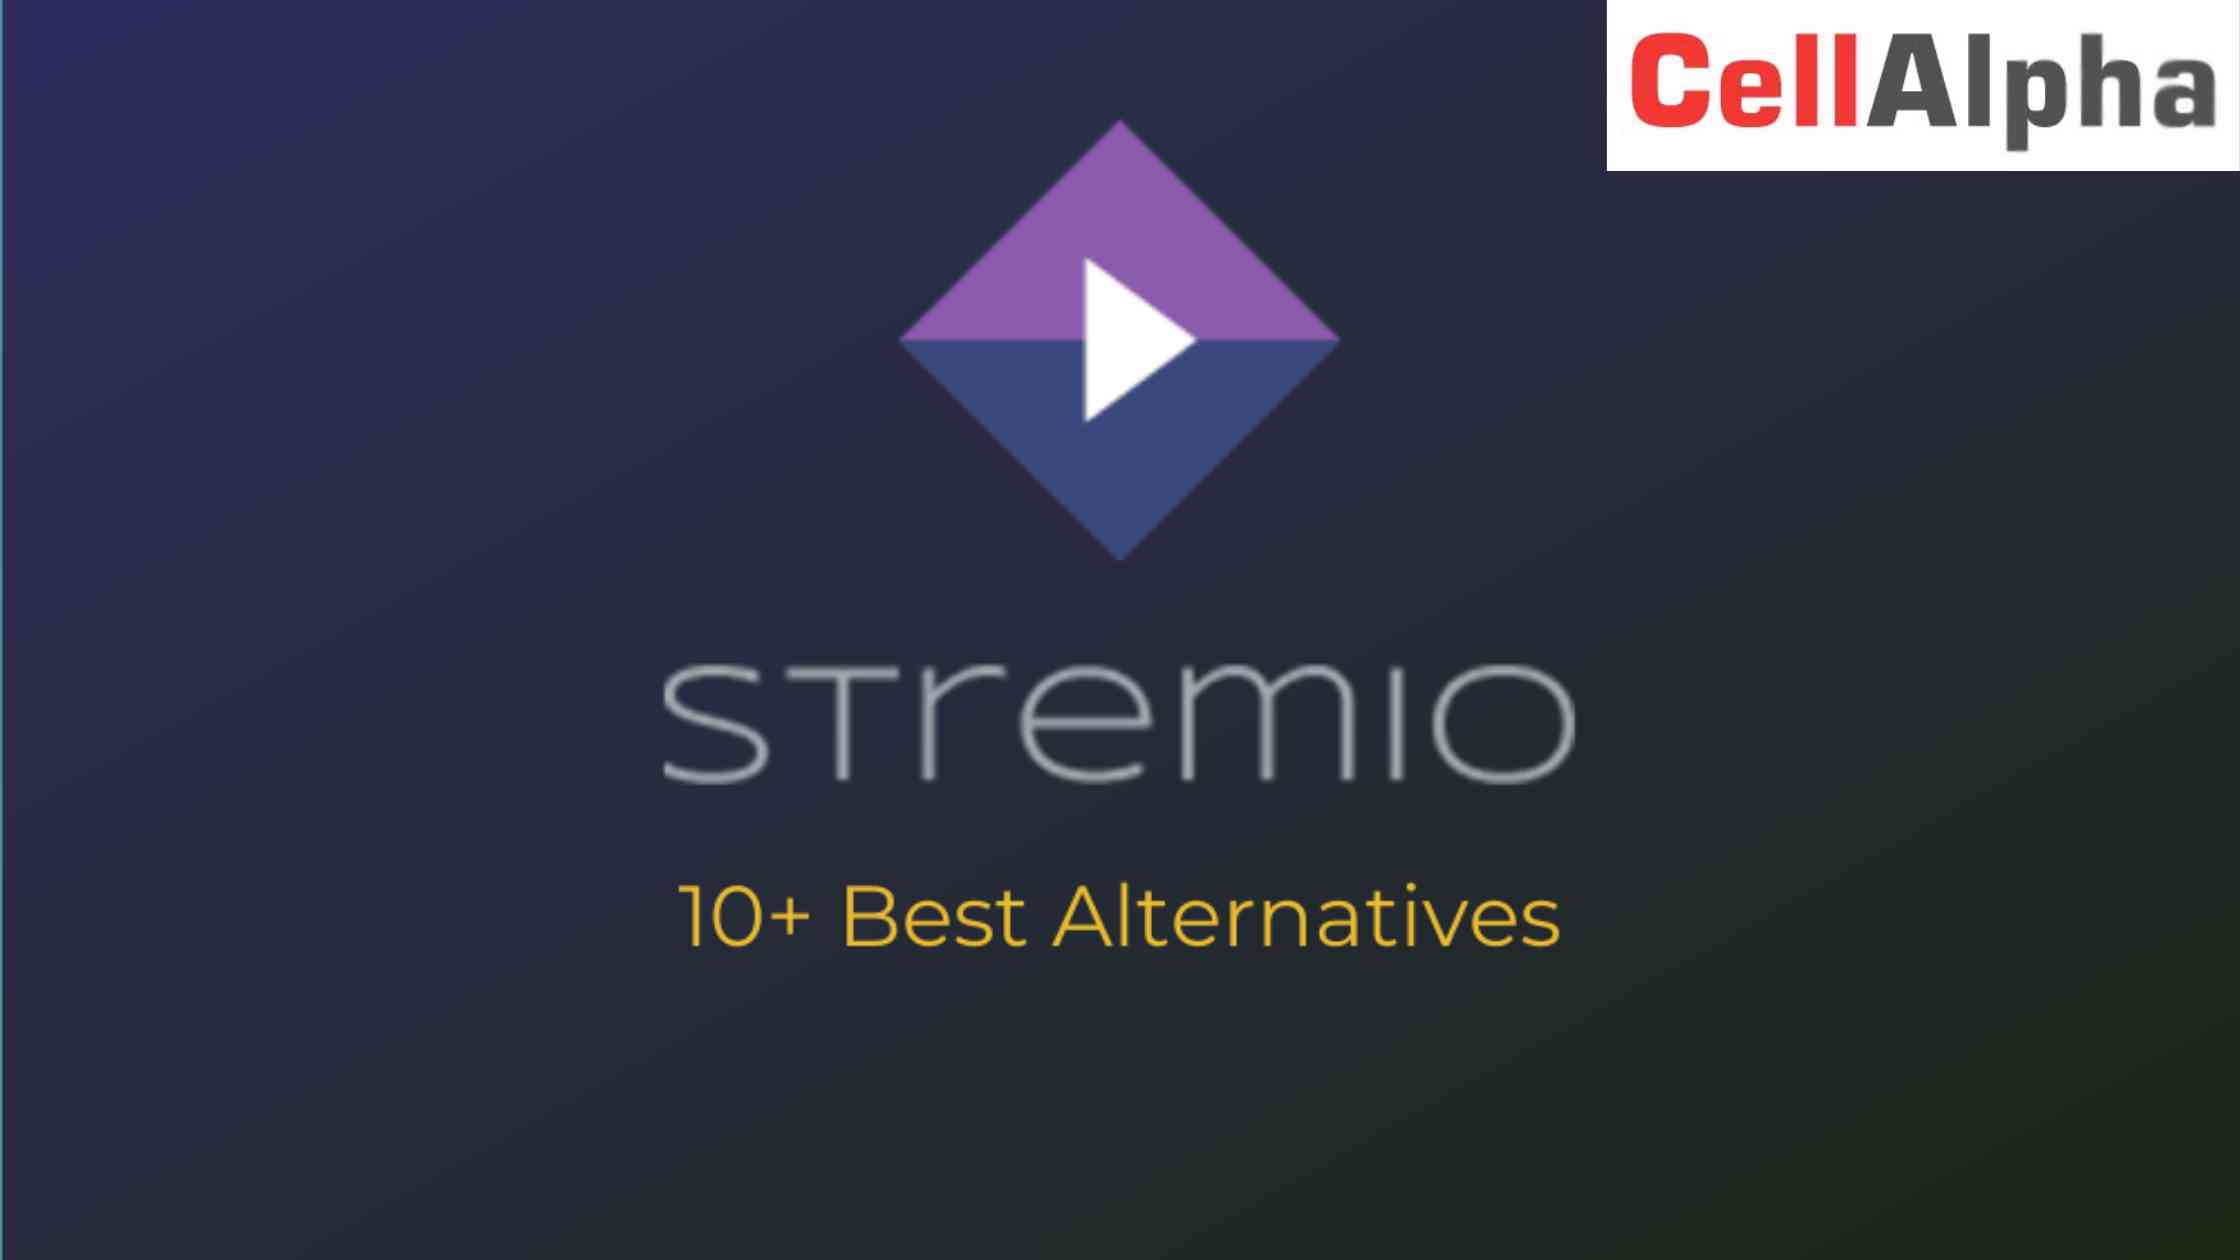 Best Stremio Alternatives